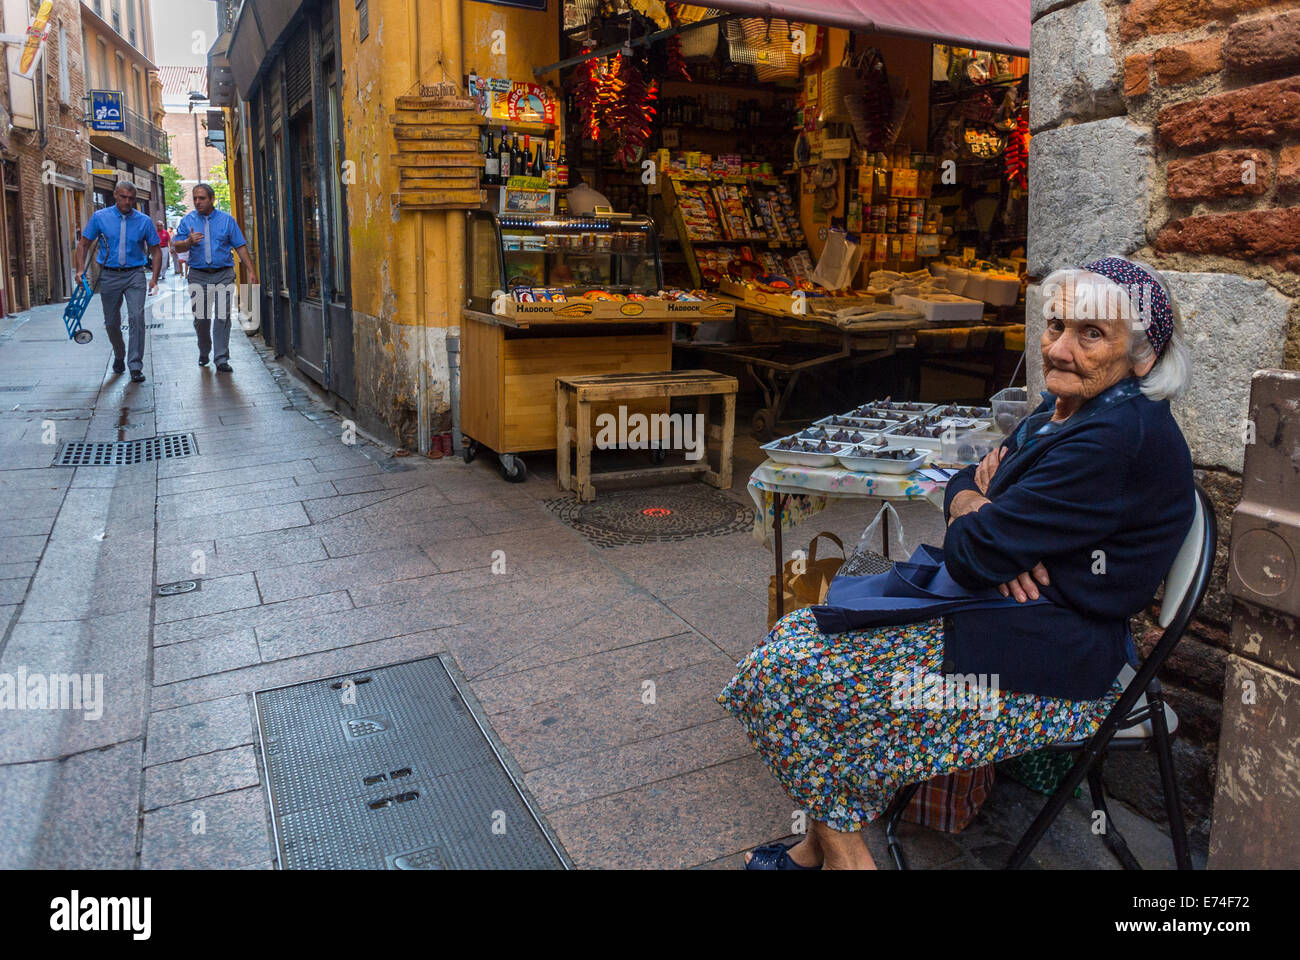 Perpignan, France, marchés alimentaires français, vieille femme assise, Vente de produits locaux sur rue Stall, consommation locale Banque D'Images